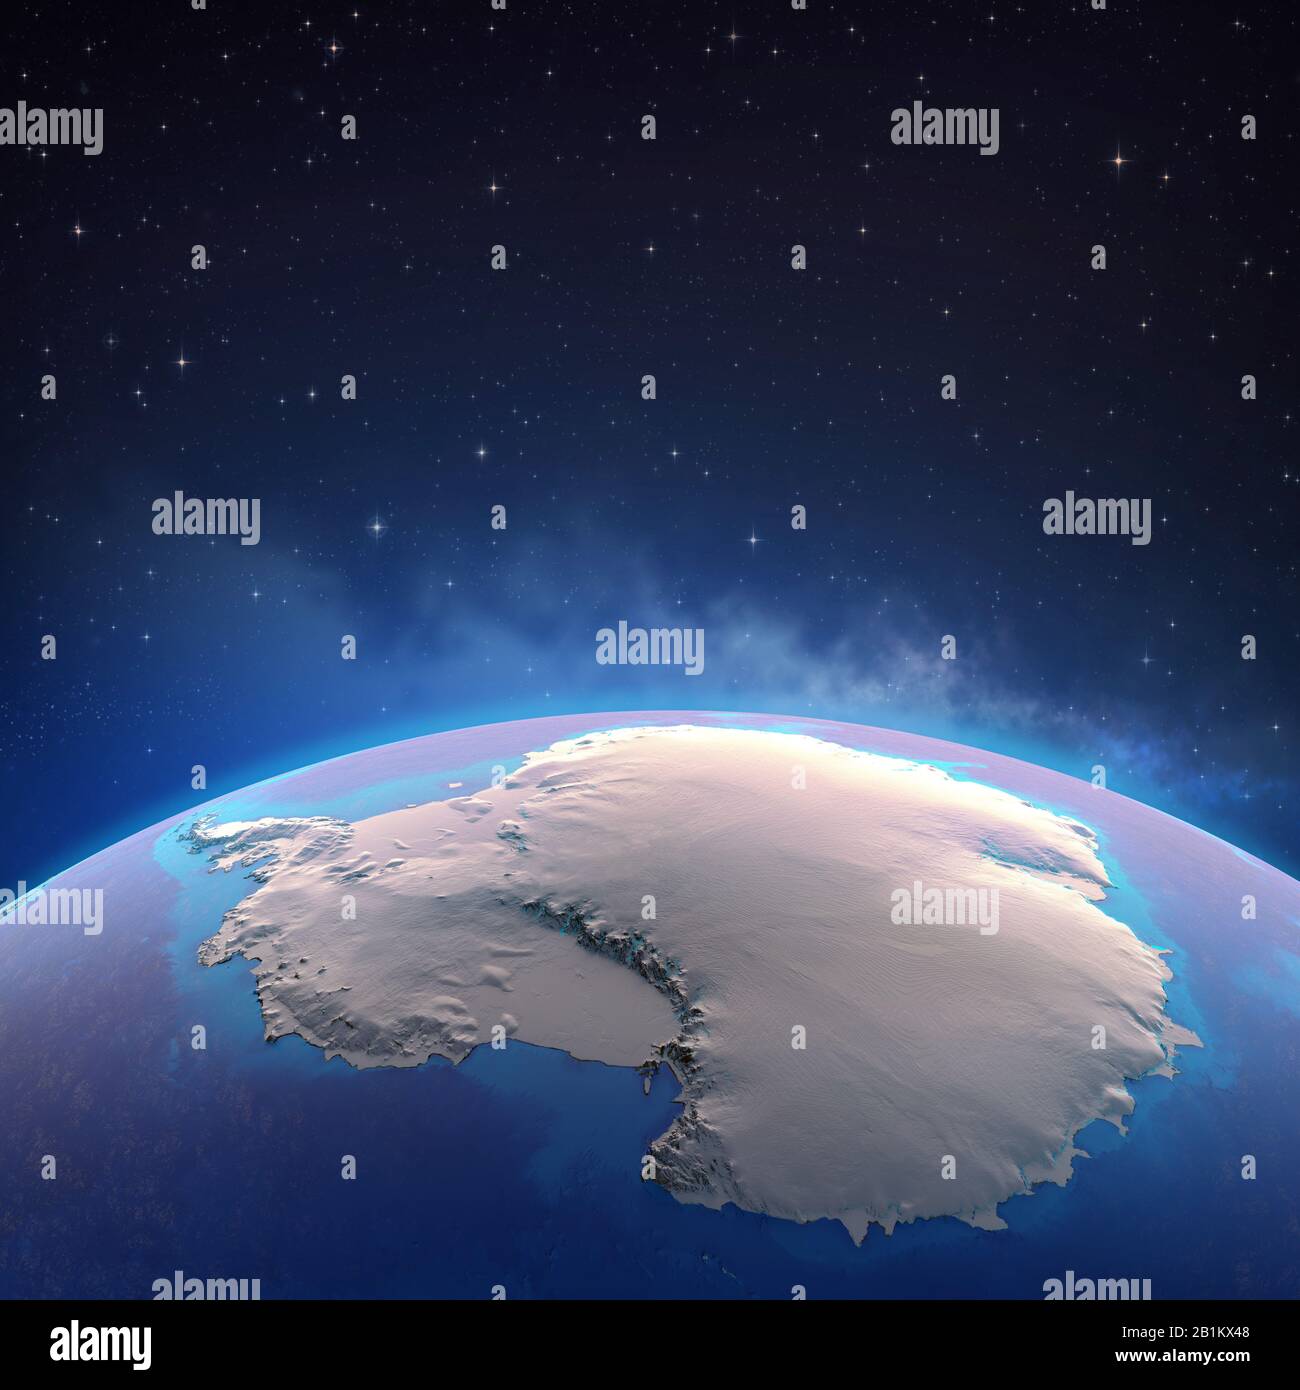 Der Kontinent Antarktis wurde von einem Satelliten aus gesehen und das Eis schmilzt ab. Physische Karte des Südpols. 3D-Illustration - Elemente dieses Bildes, das von der NASA erstellt wurde Stockfoto